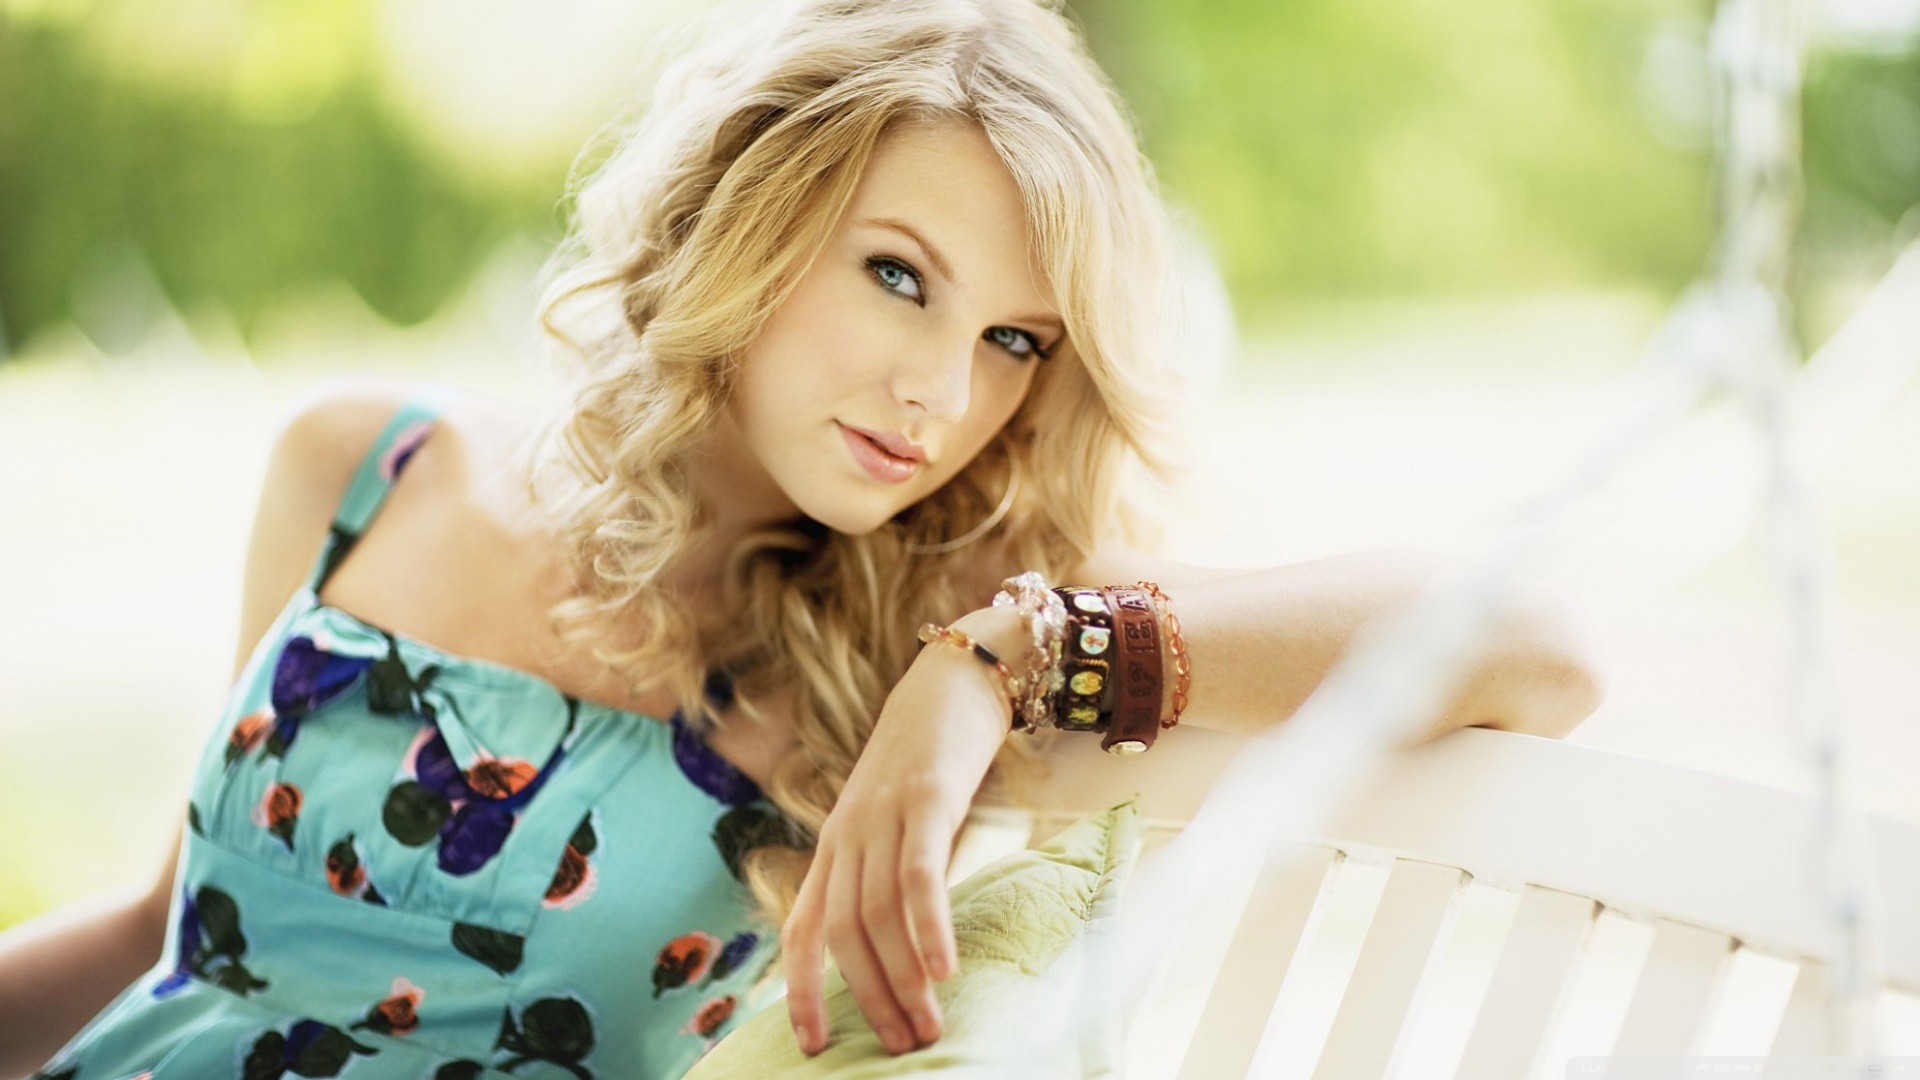 People 1920x1080 Taylor Swift celebrity blonde women singer